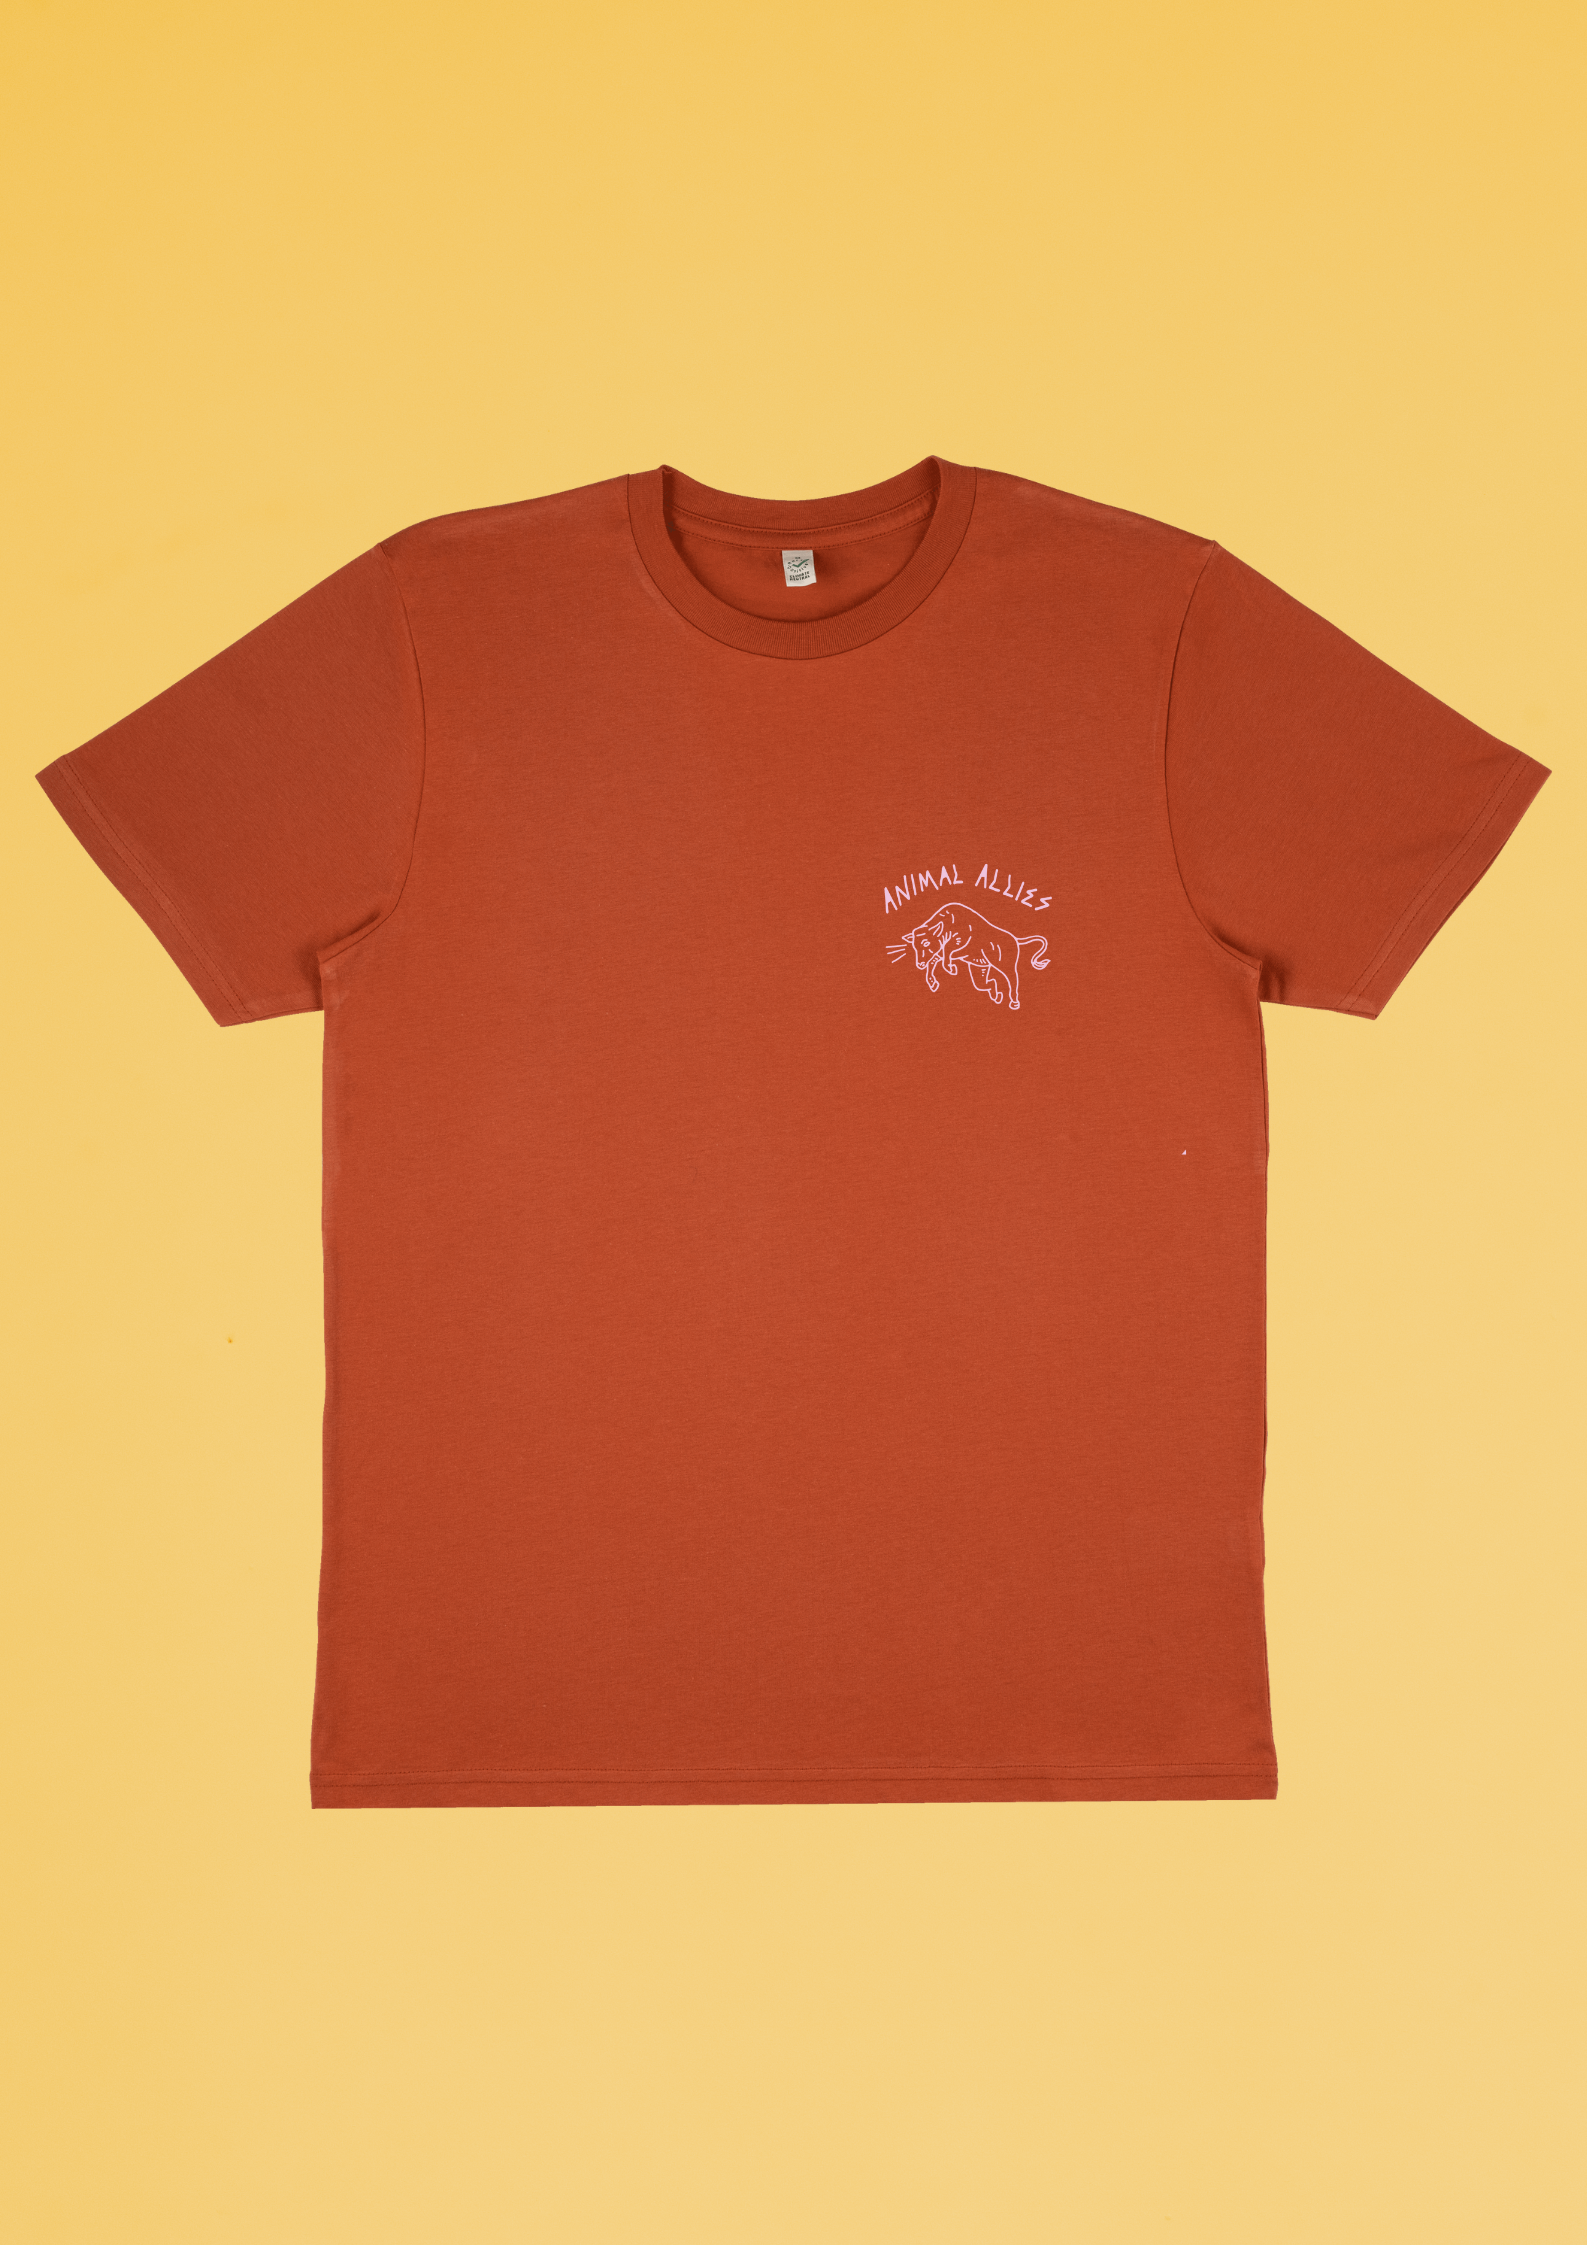 Animal Allies Burnt Orange T-Shirt